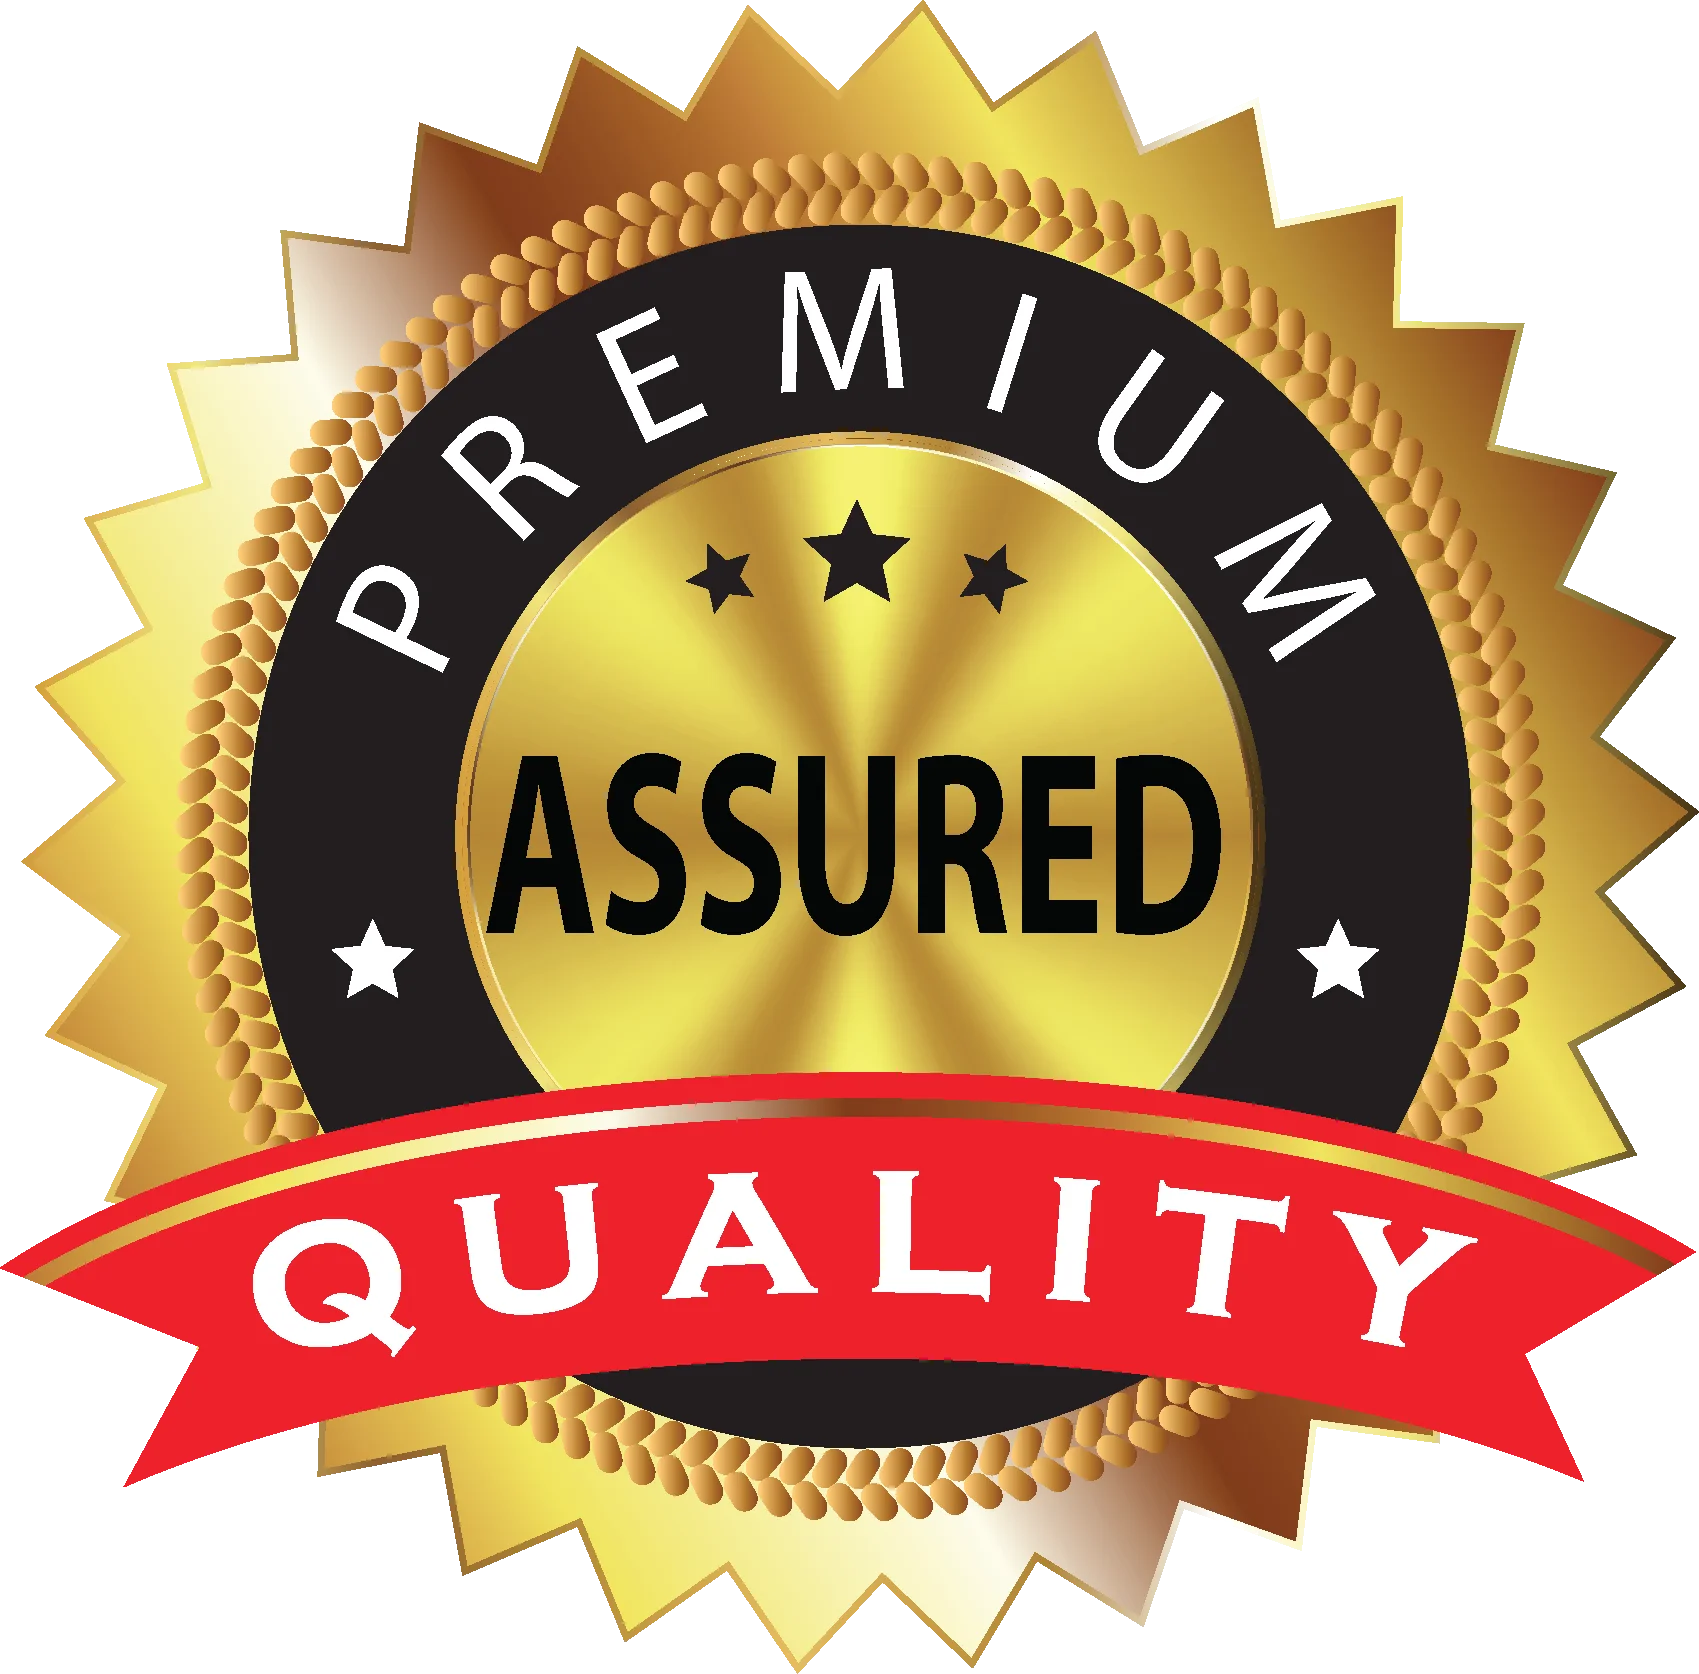 Premium логотип. Quality логотип. Премиум quality. Премиальное качество. Super quality